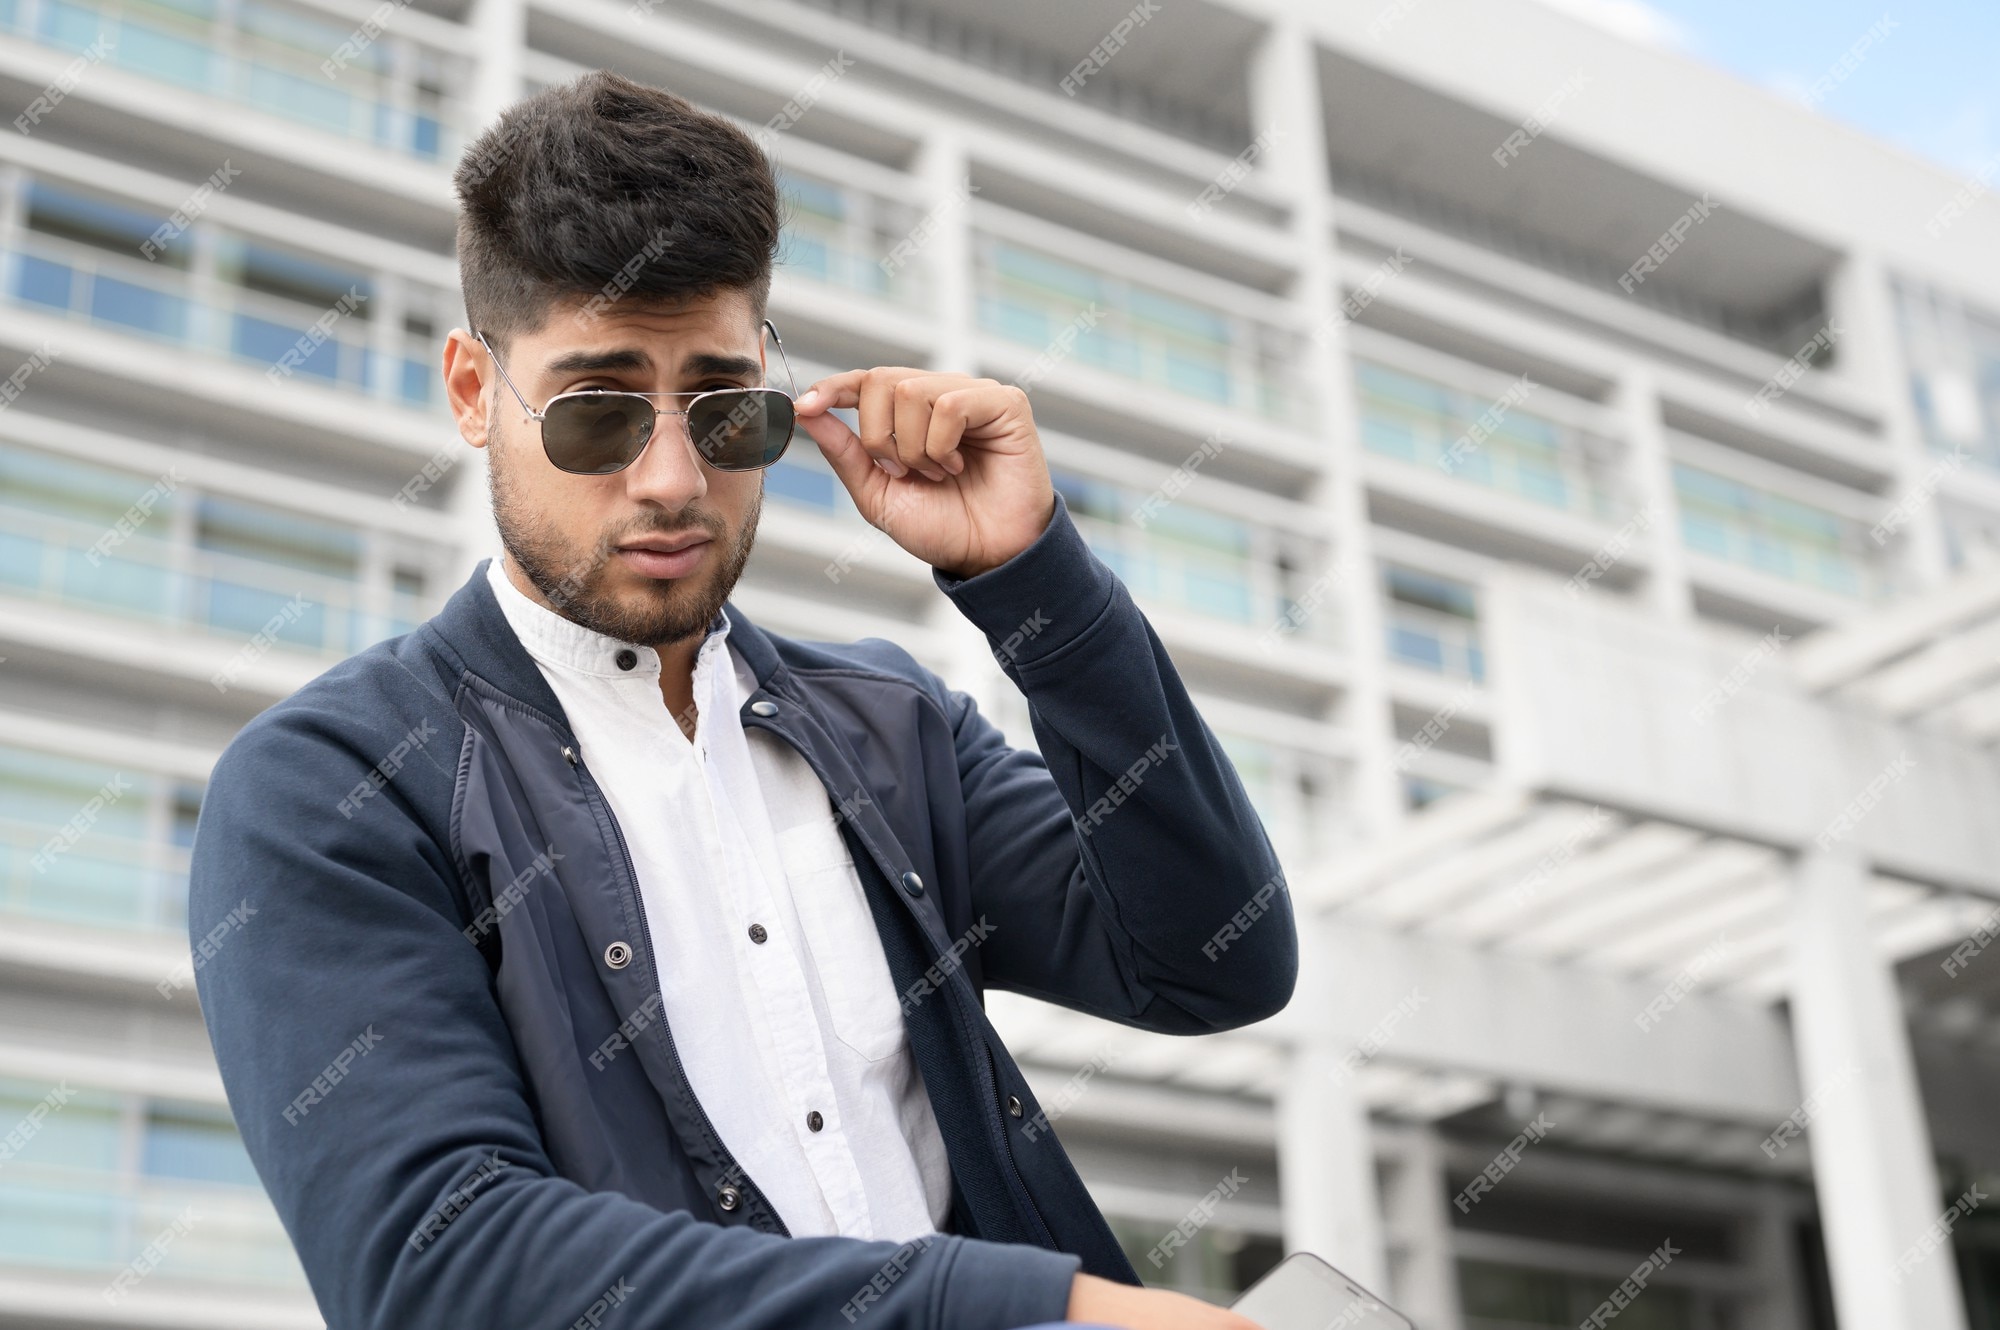 Retrato de hombre joven con elegantes gafas de sol posando junto a un edificio moderno Foto Premium